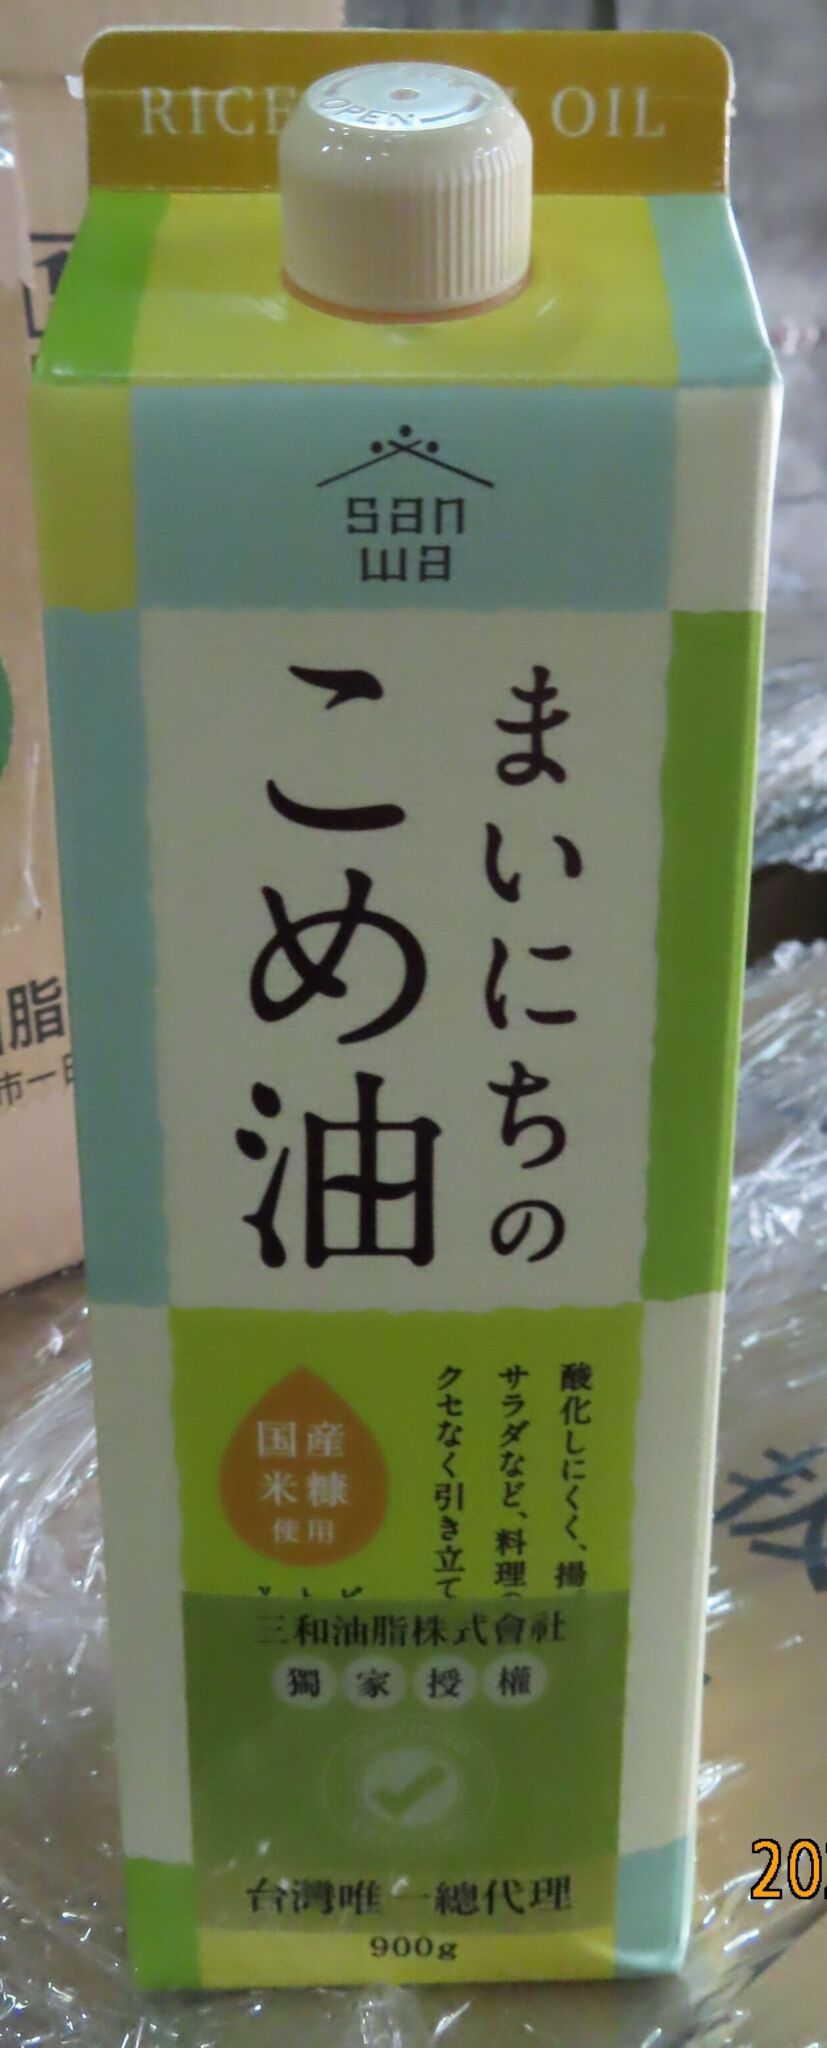 下肚有致癌性+基因毒性！ 團購夯品日本「玄米胚芽油」汙染物超標 21